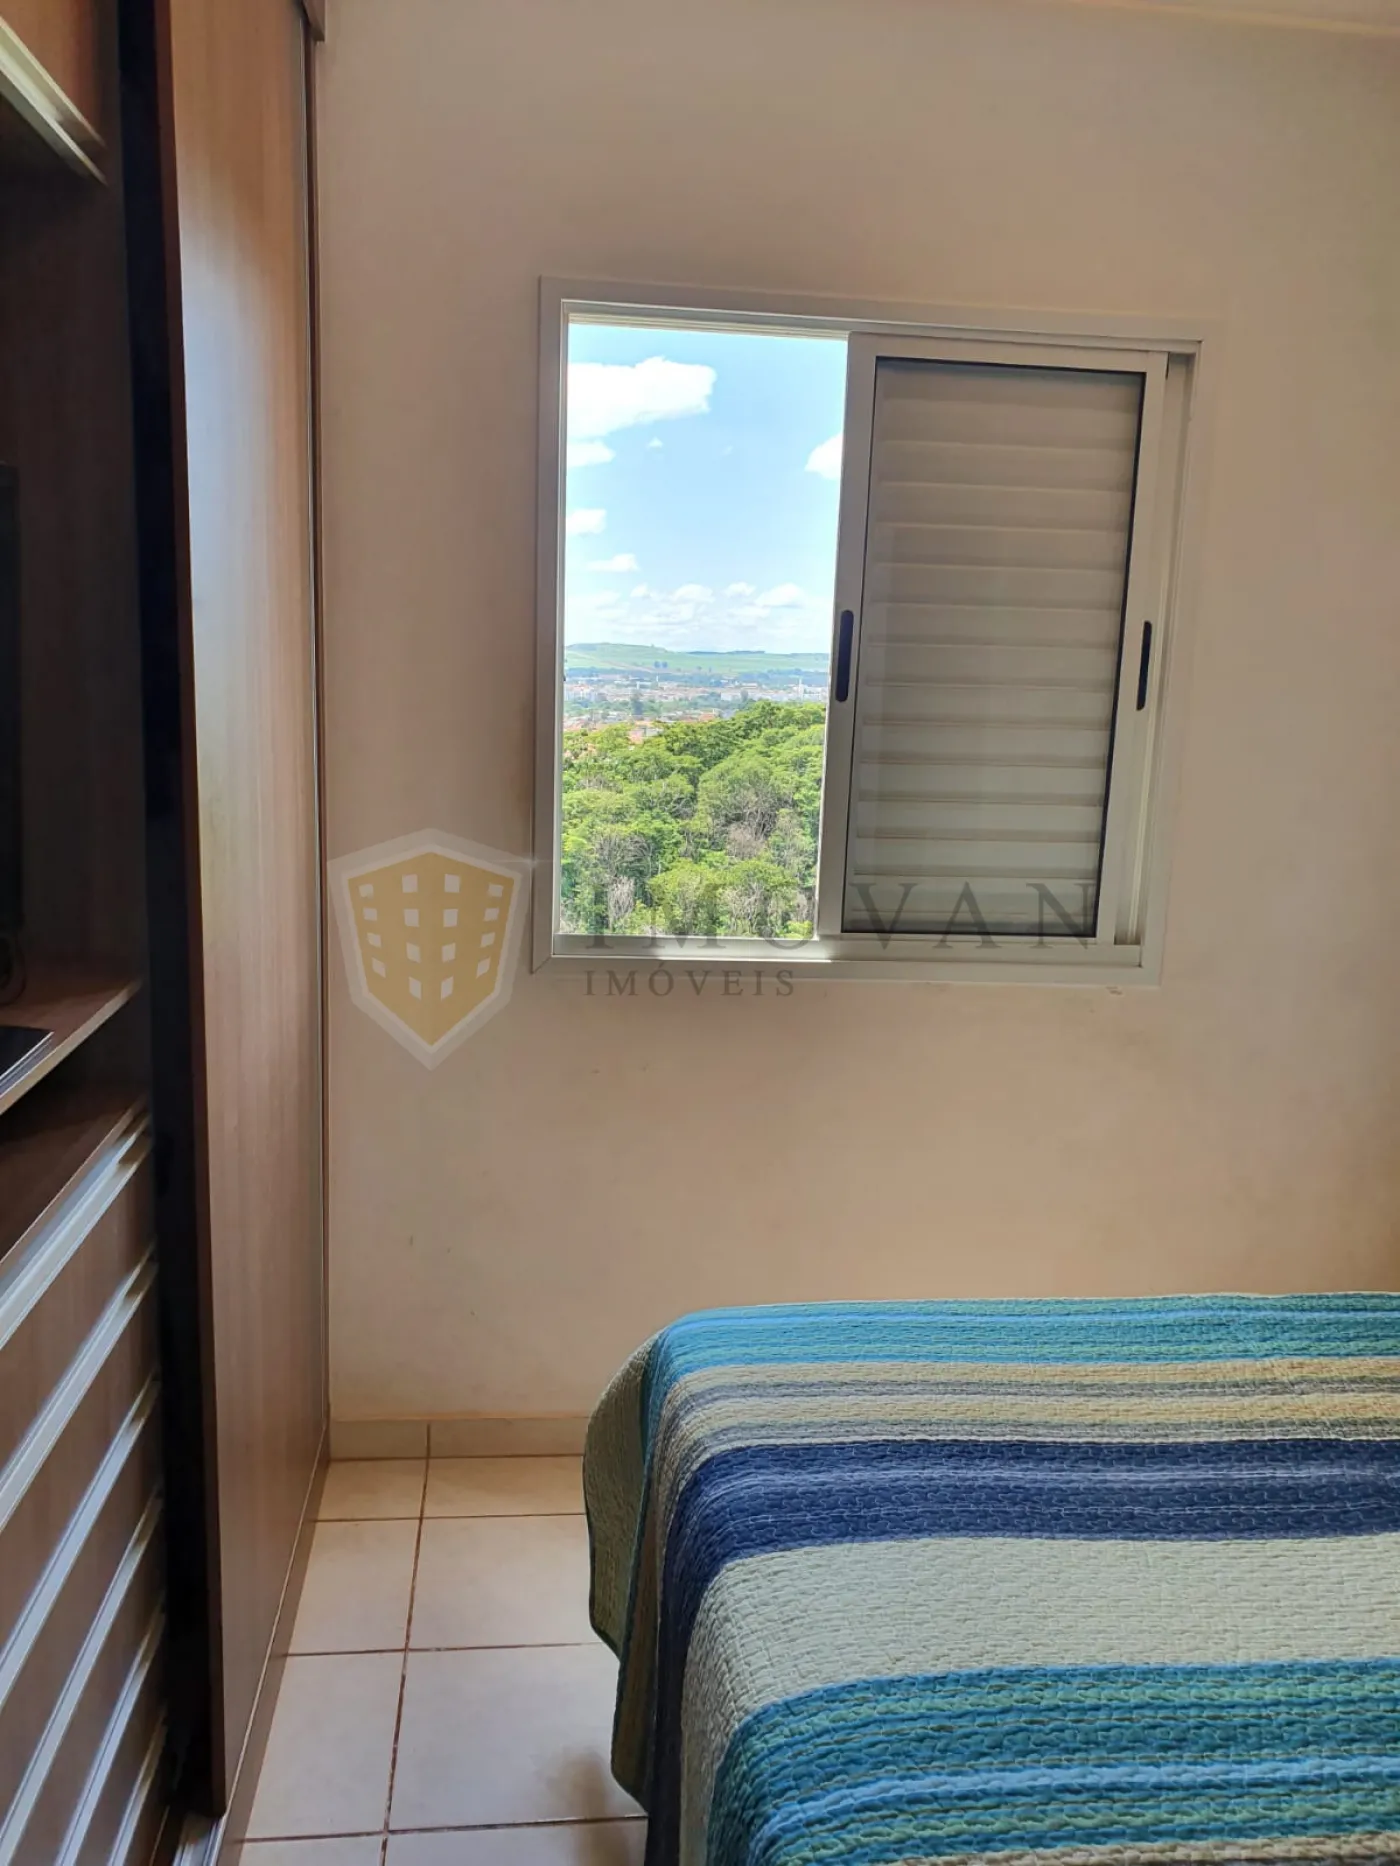 Comprar Apartamento / Padrão em Ribeirão Preto R$ 420.000,00 - Foto 10